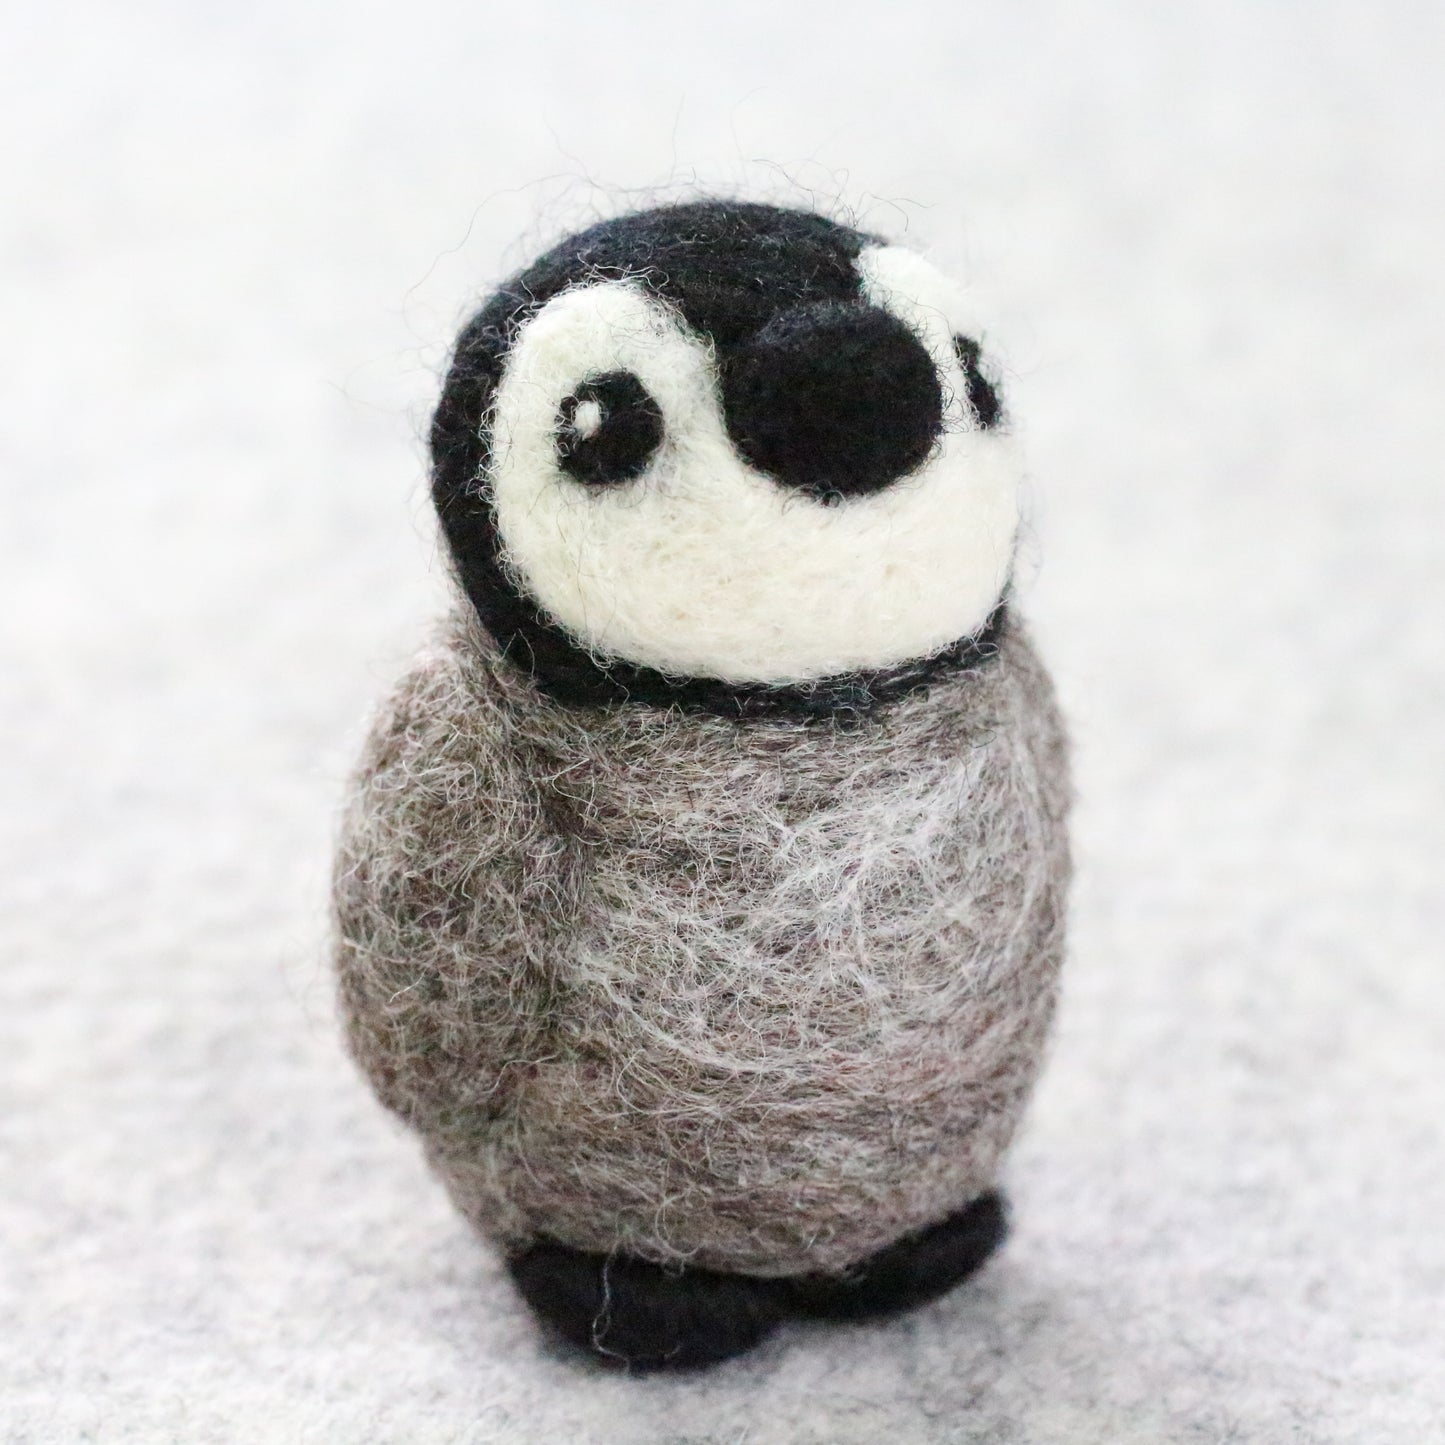 Mini Penguin Needle Felting Kit